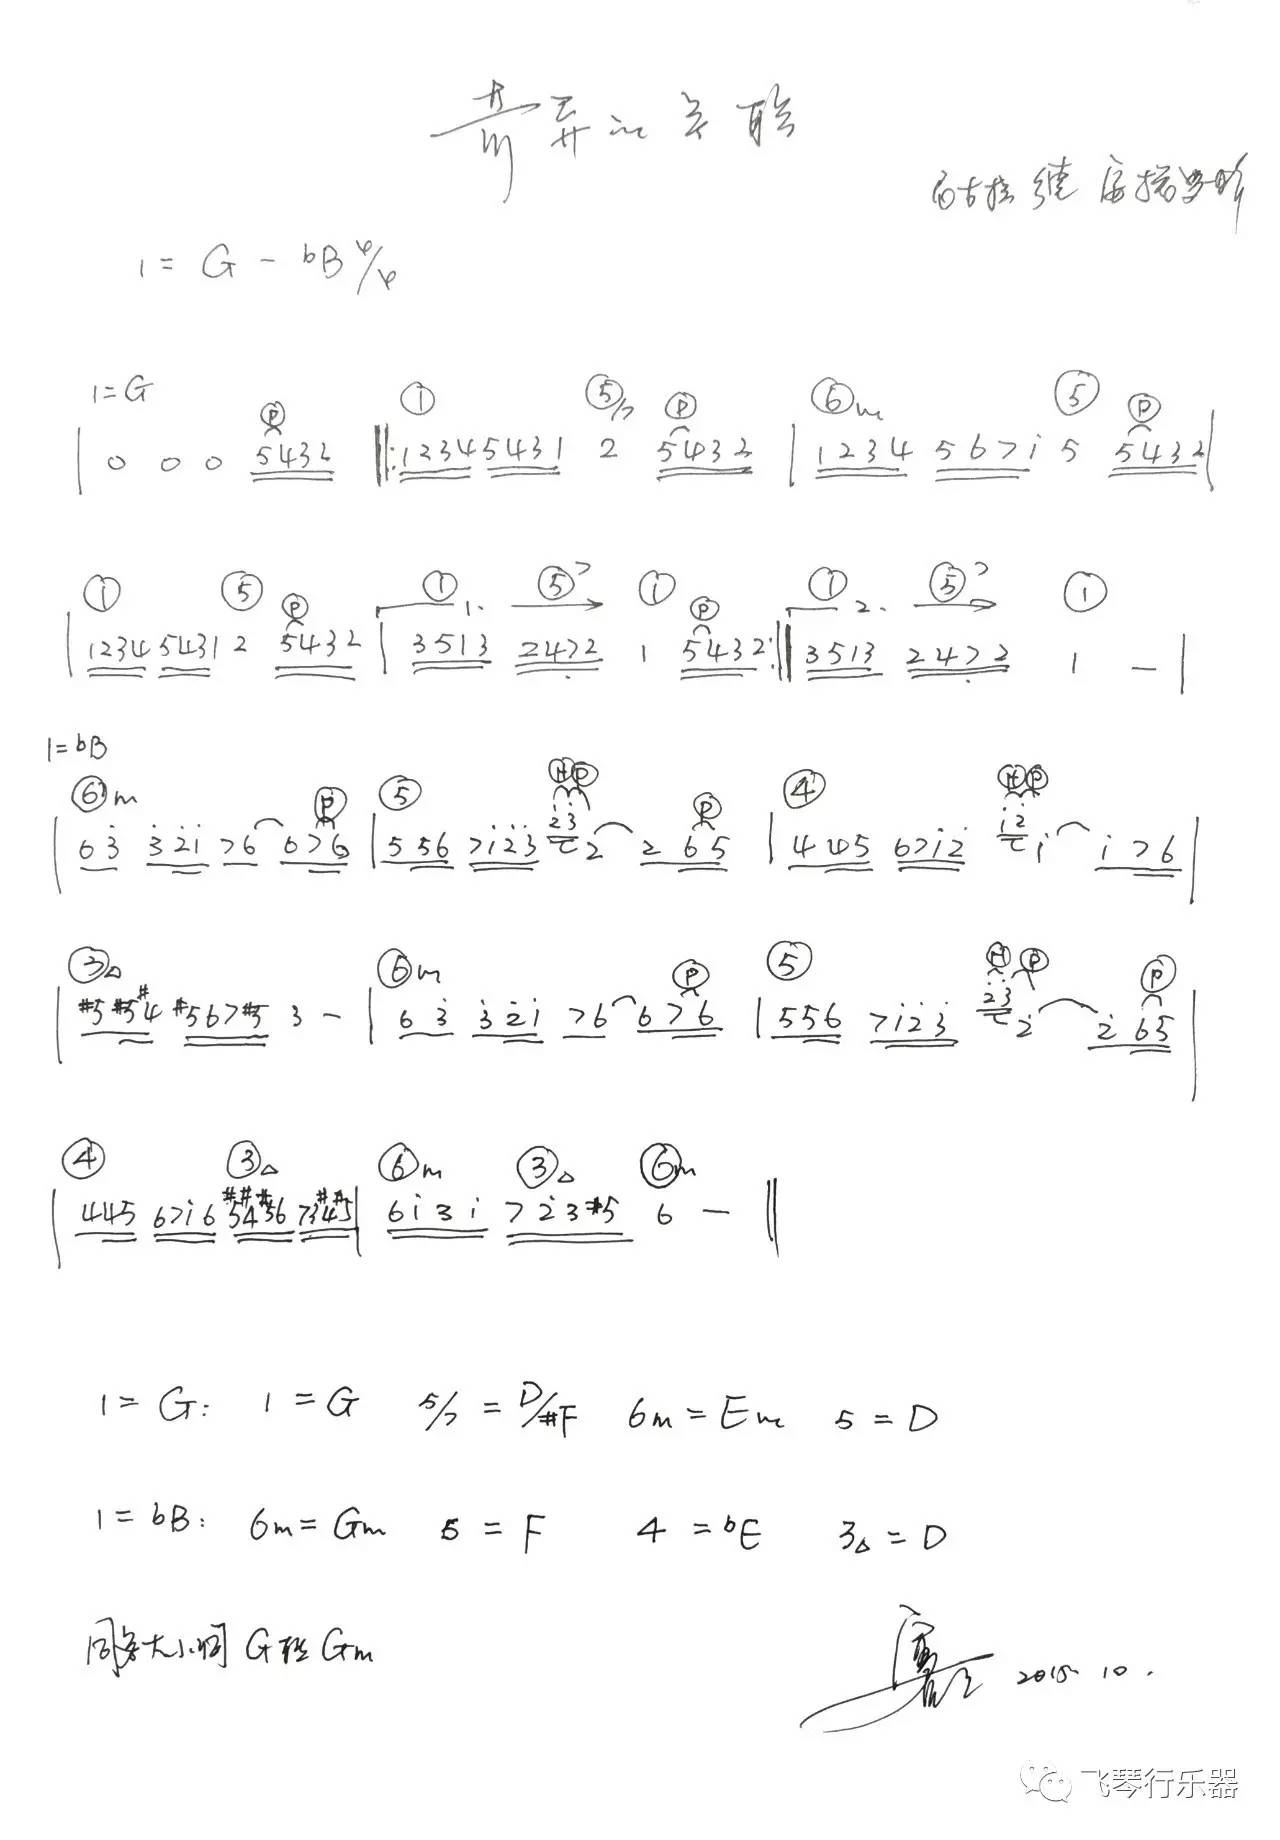 g和弦简谱_小星星和弦简谱(3)